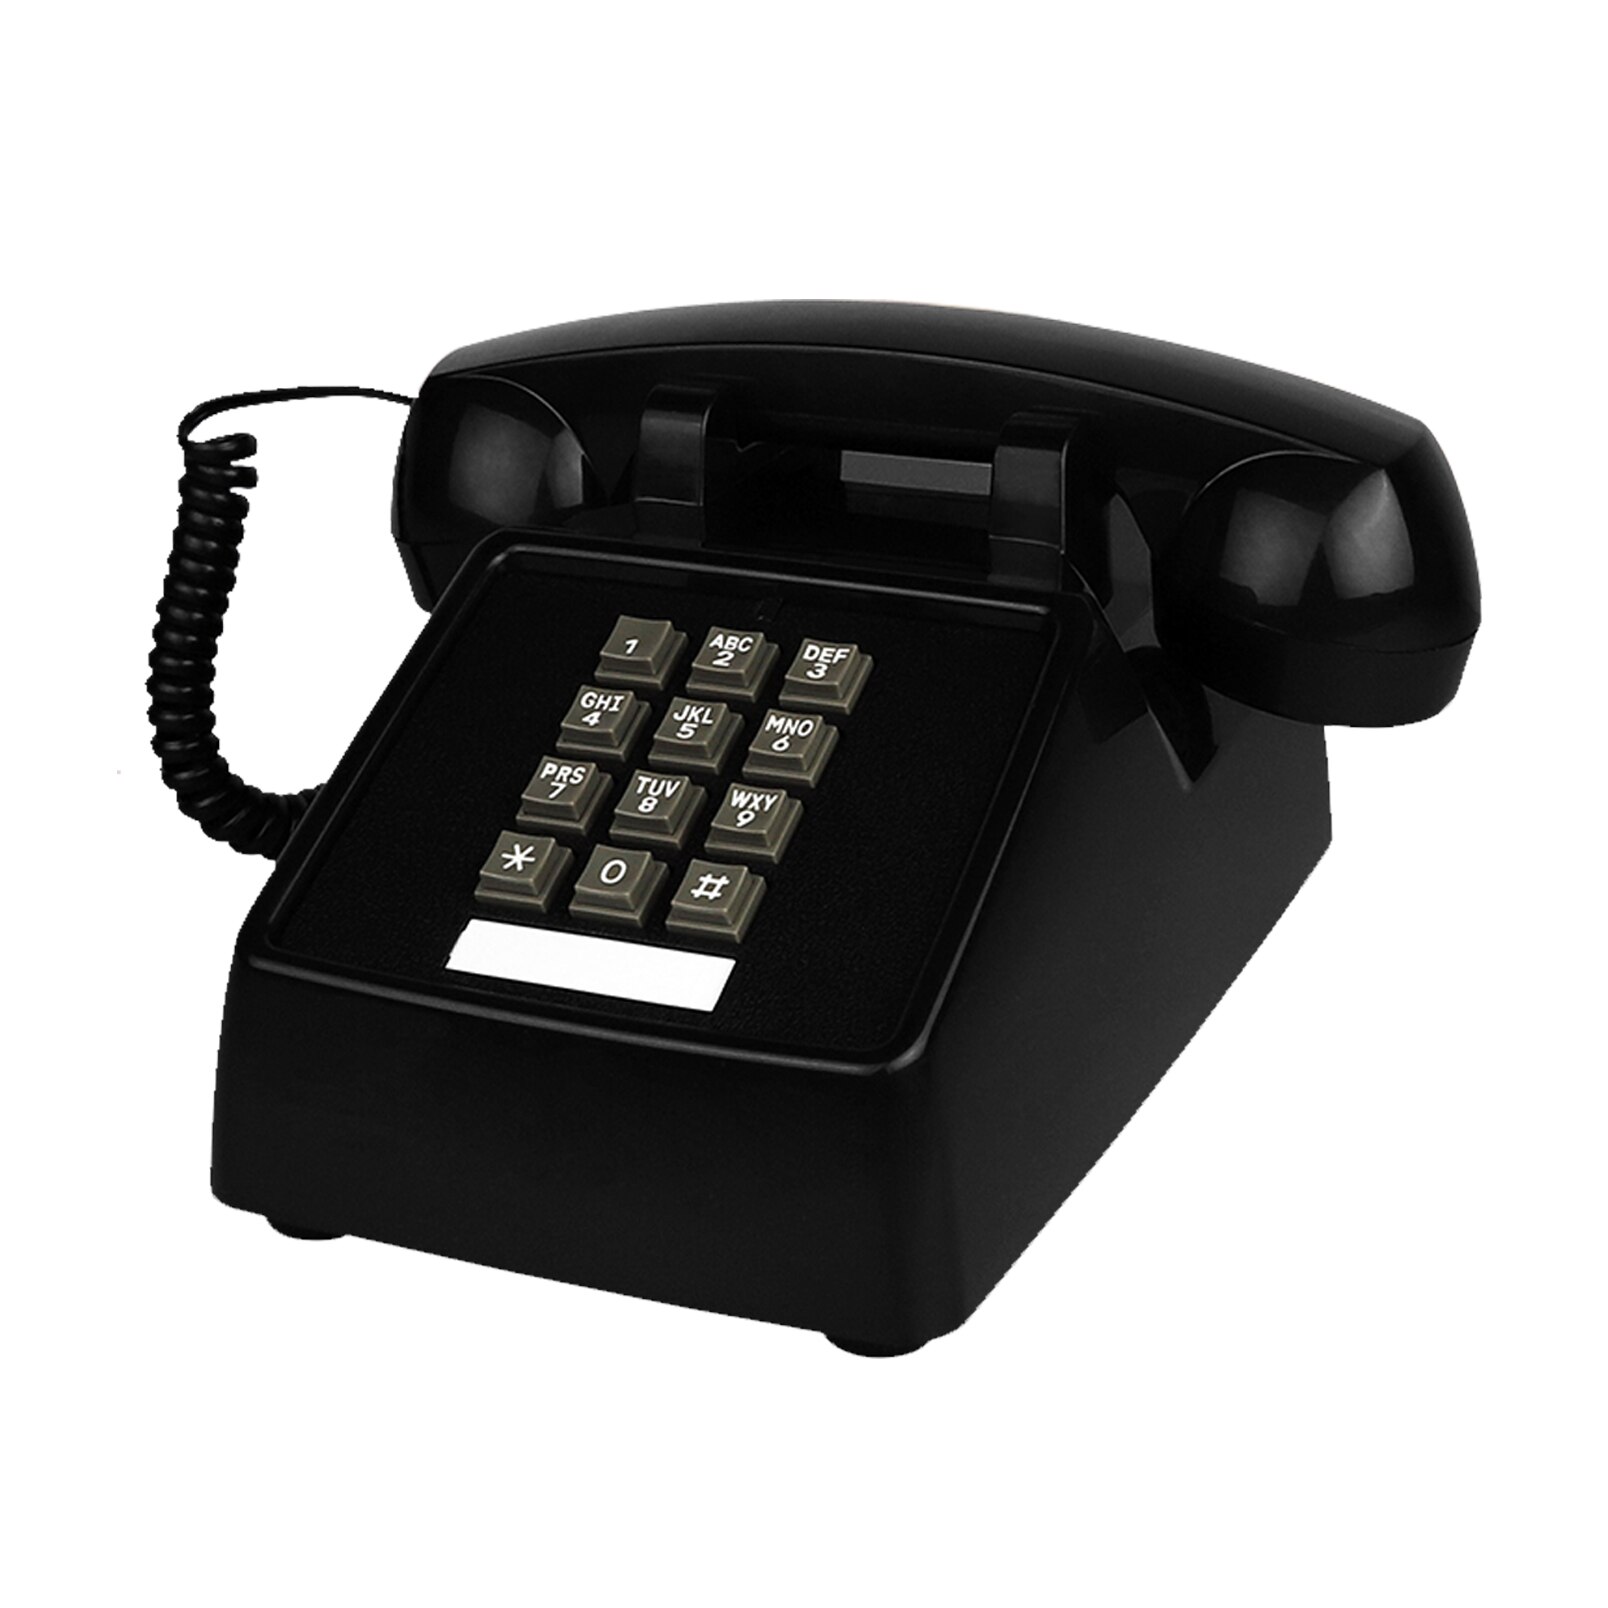 Téléphone filaire rétro classique rouge analogique, Vintage, ancien, à la , fixe, pour maison, bureau, hôtel: Black Telephone